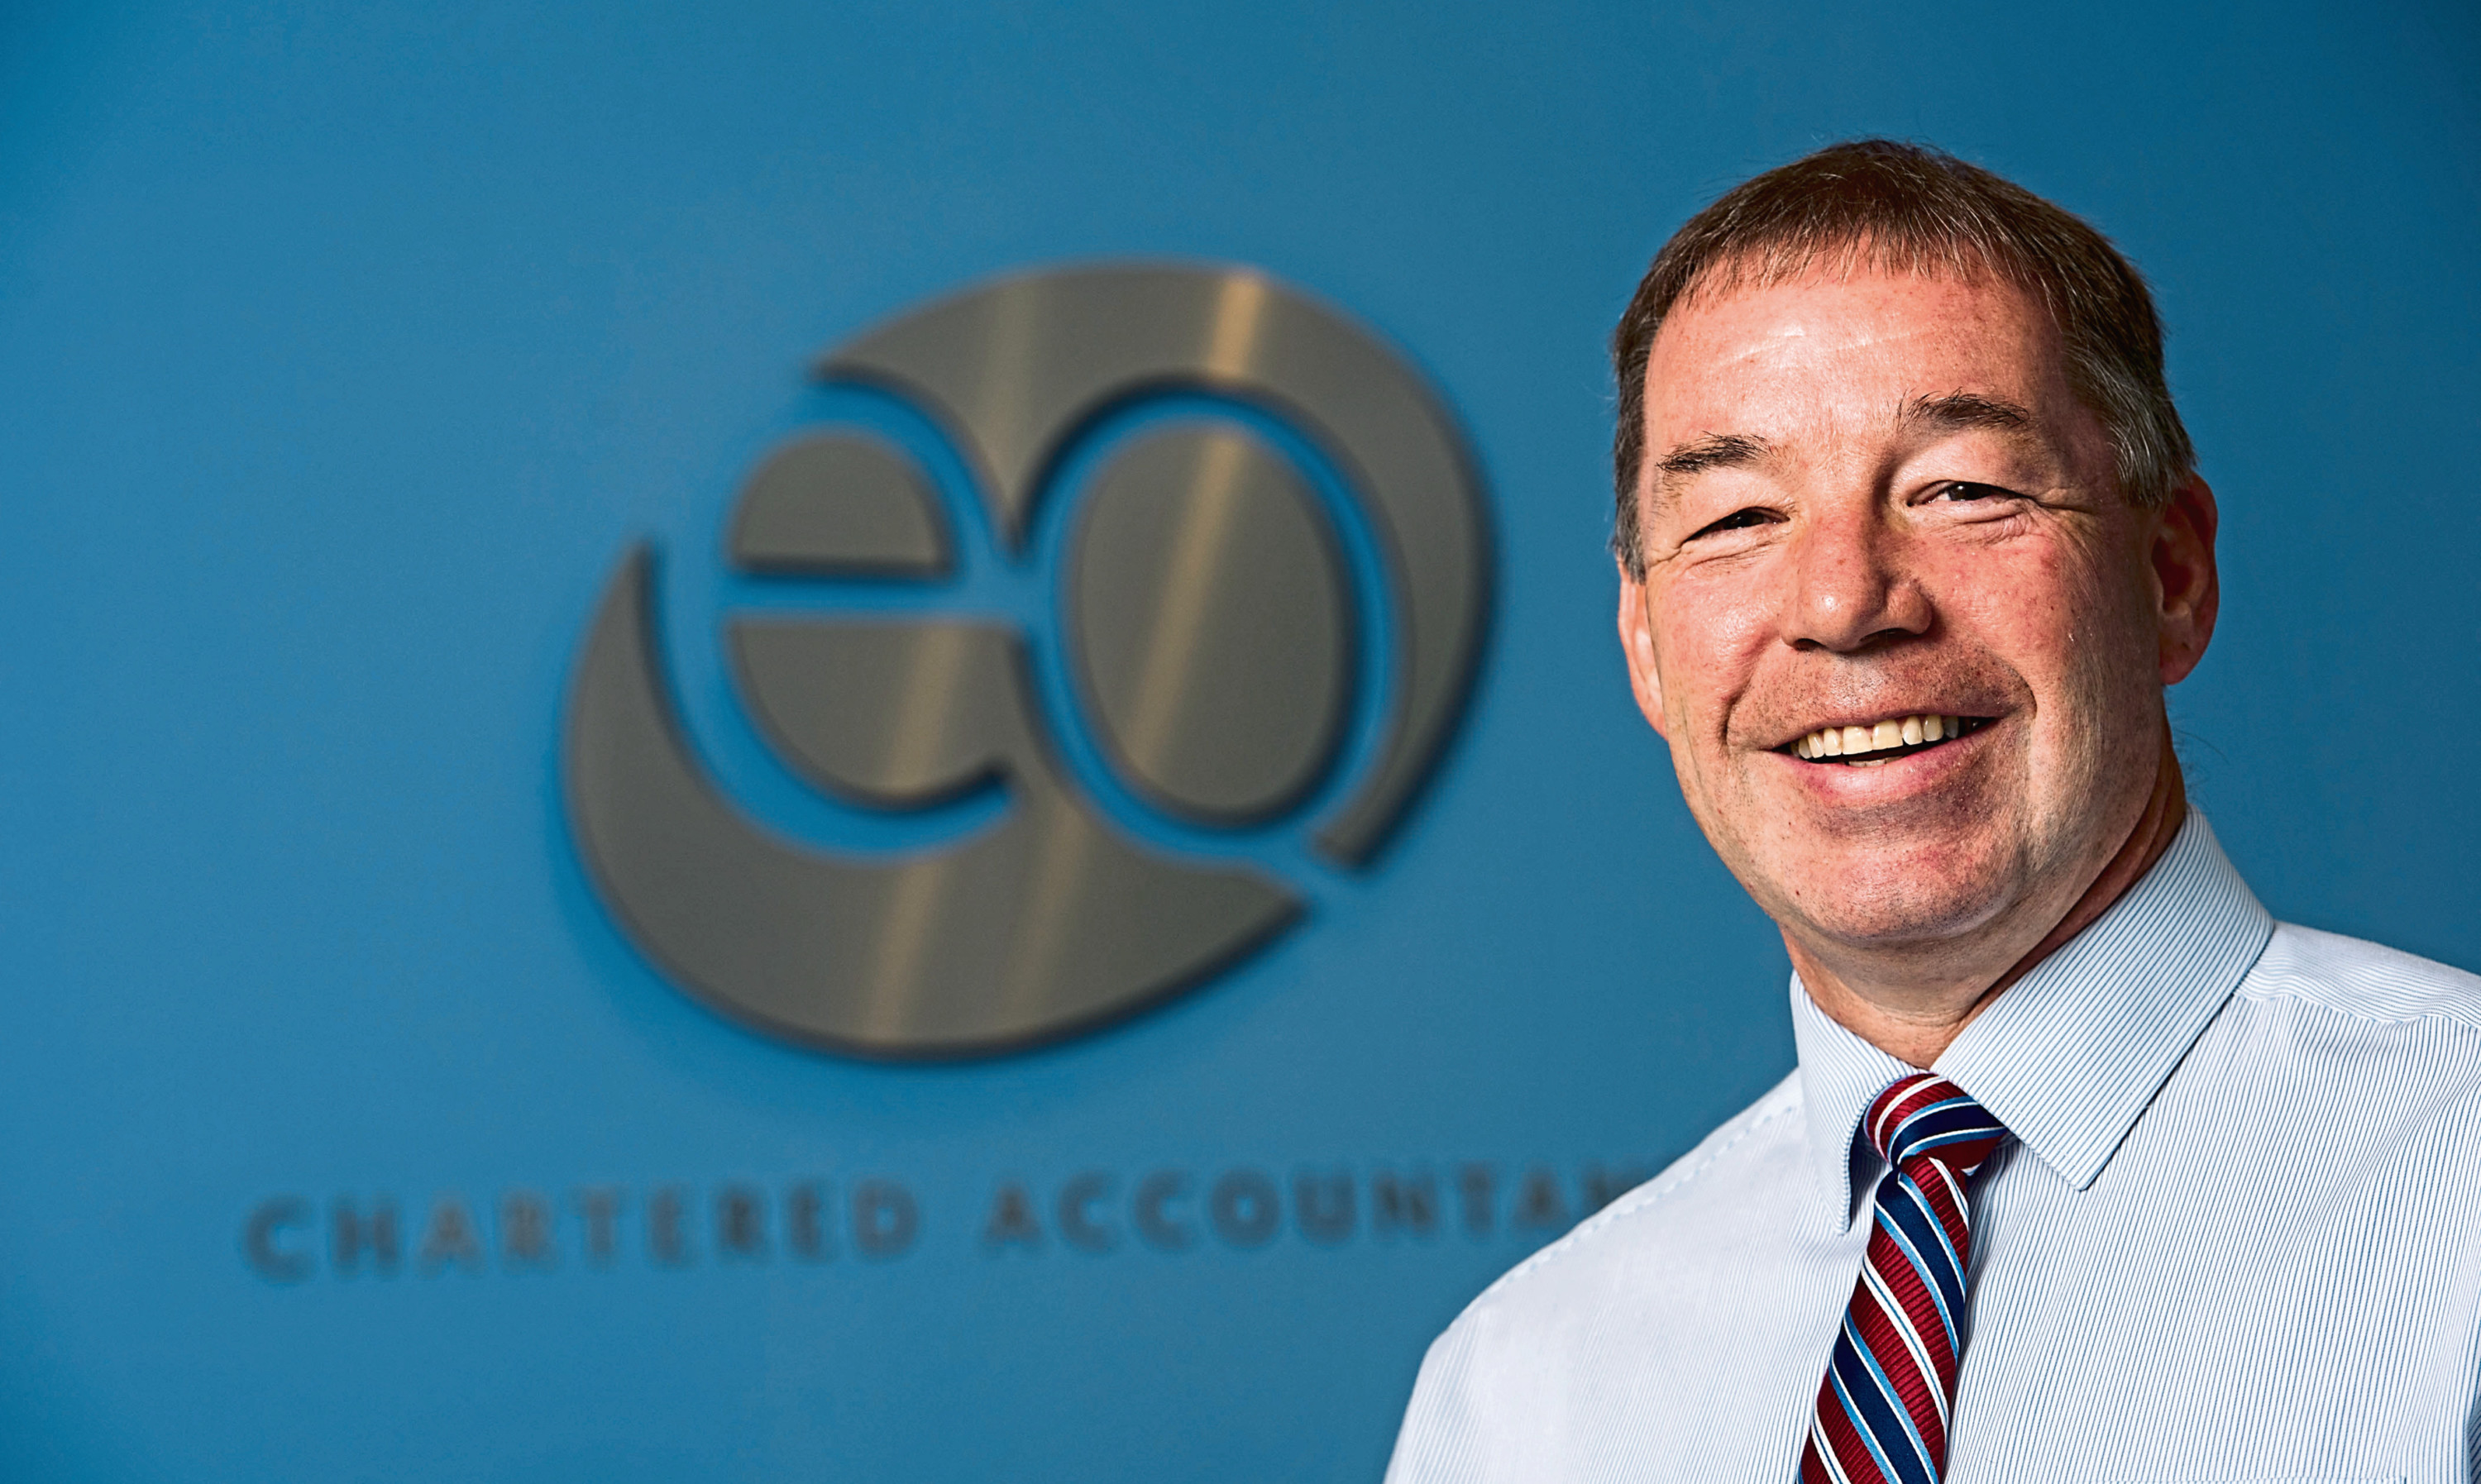 David Cameron, managing partner, EQ Accountants